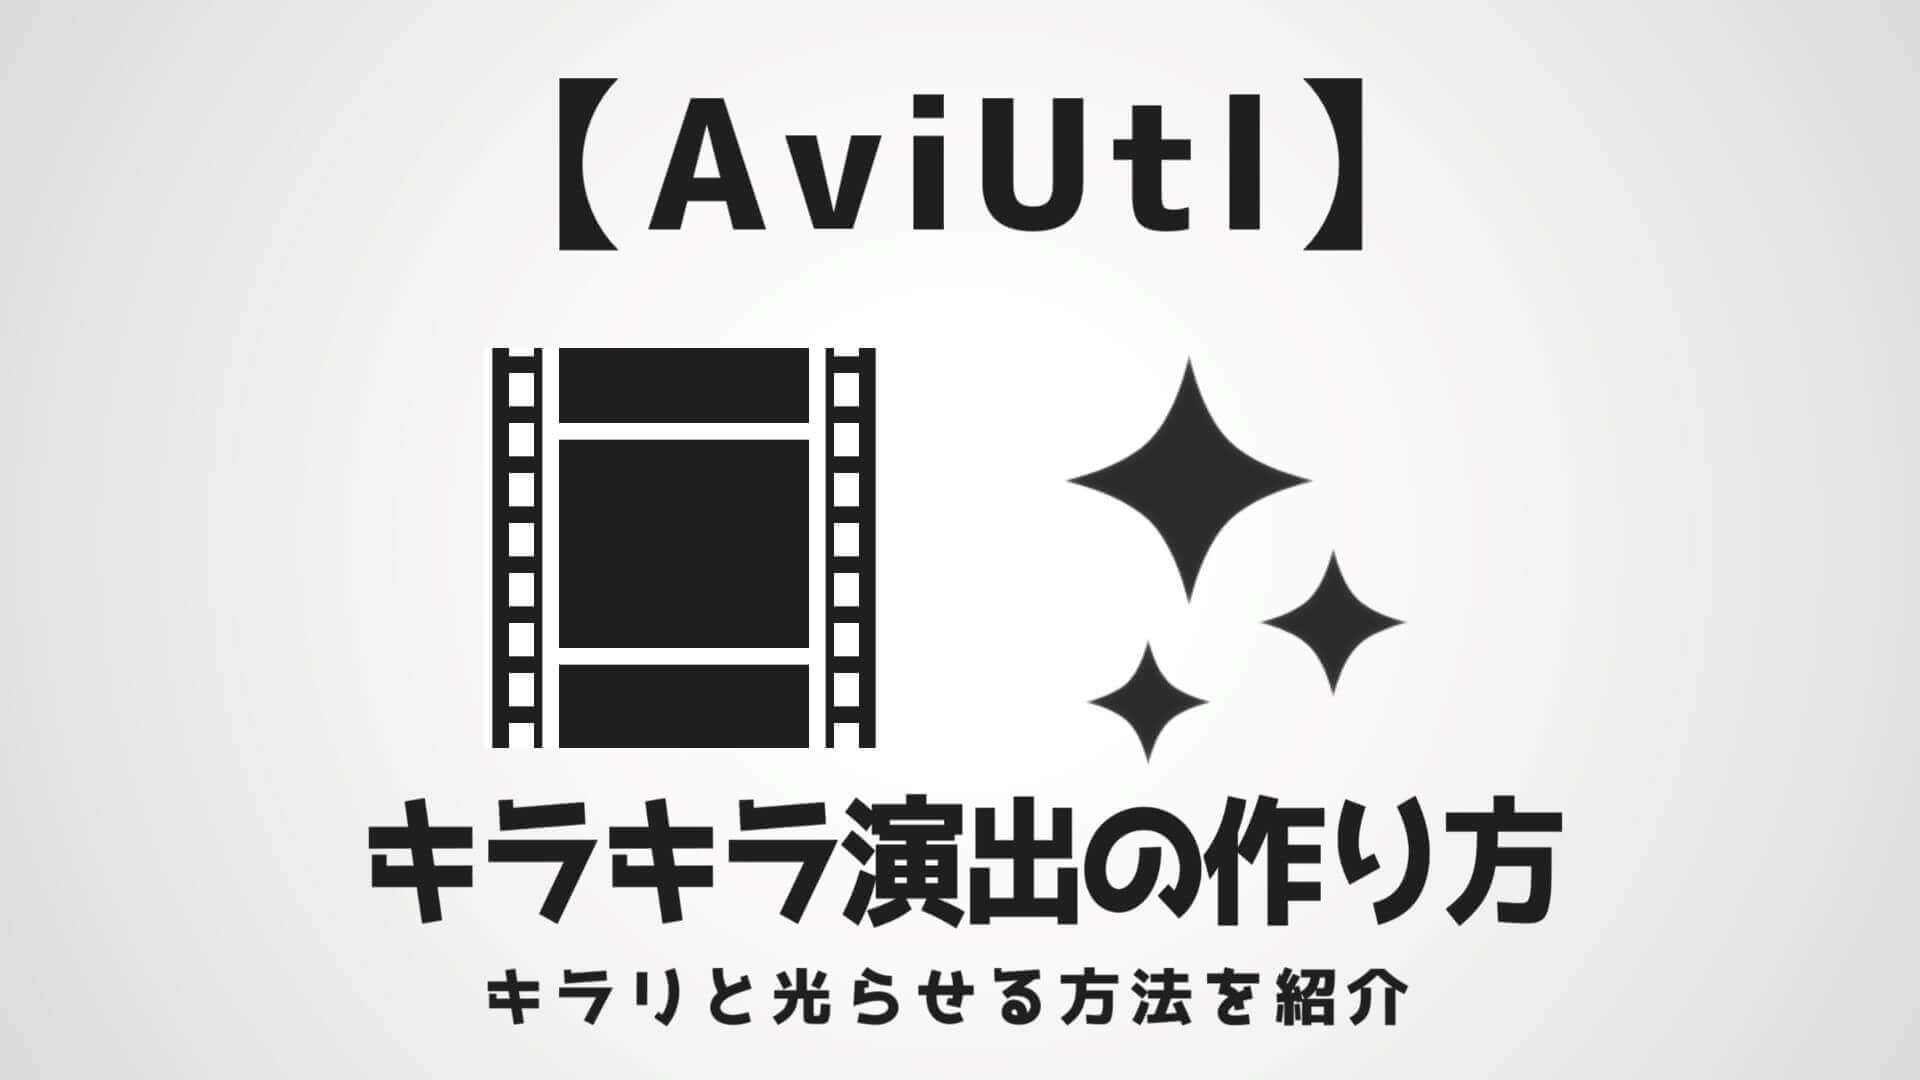 Aviutl キラキラしたエフェクトの作り方 動画やテキストを煌めかせる Aketama Official Blog